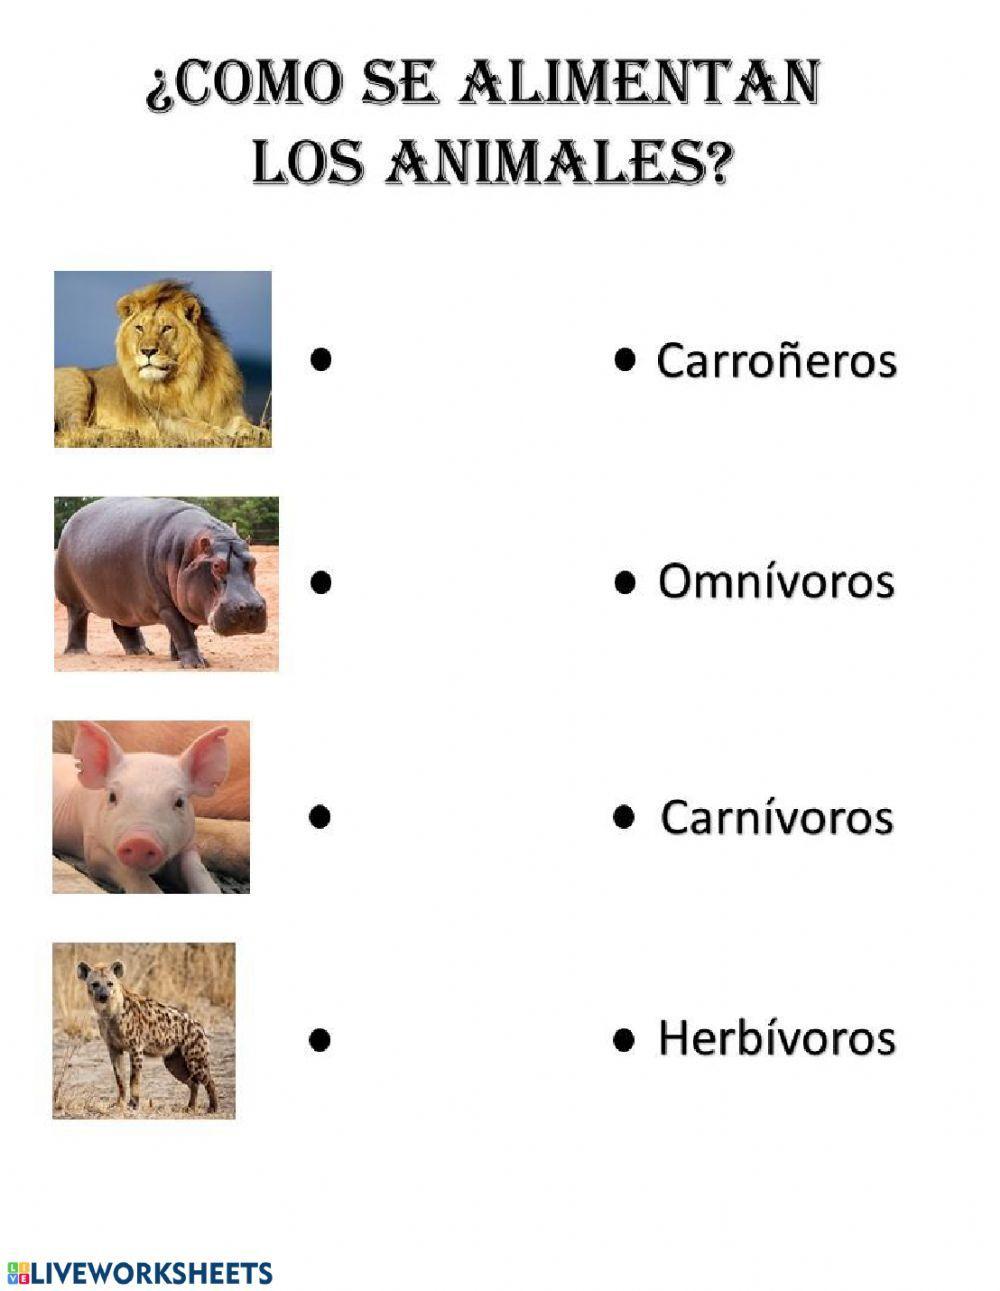 ¿Como se alimentan los animales?